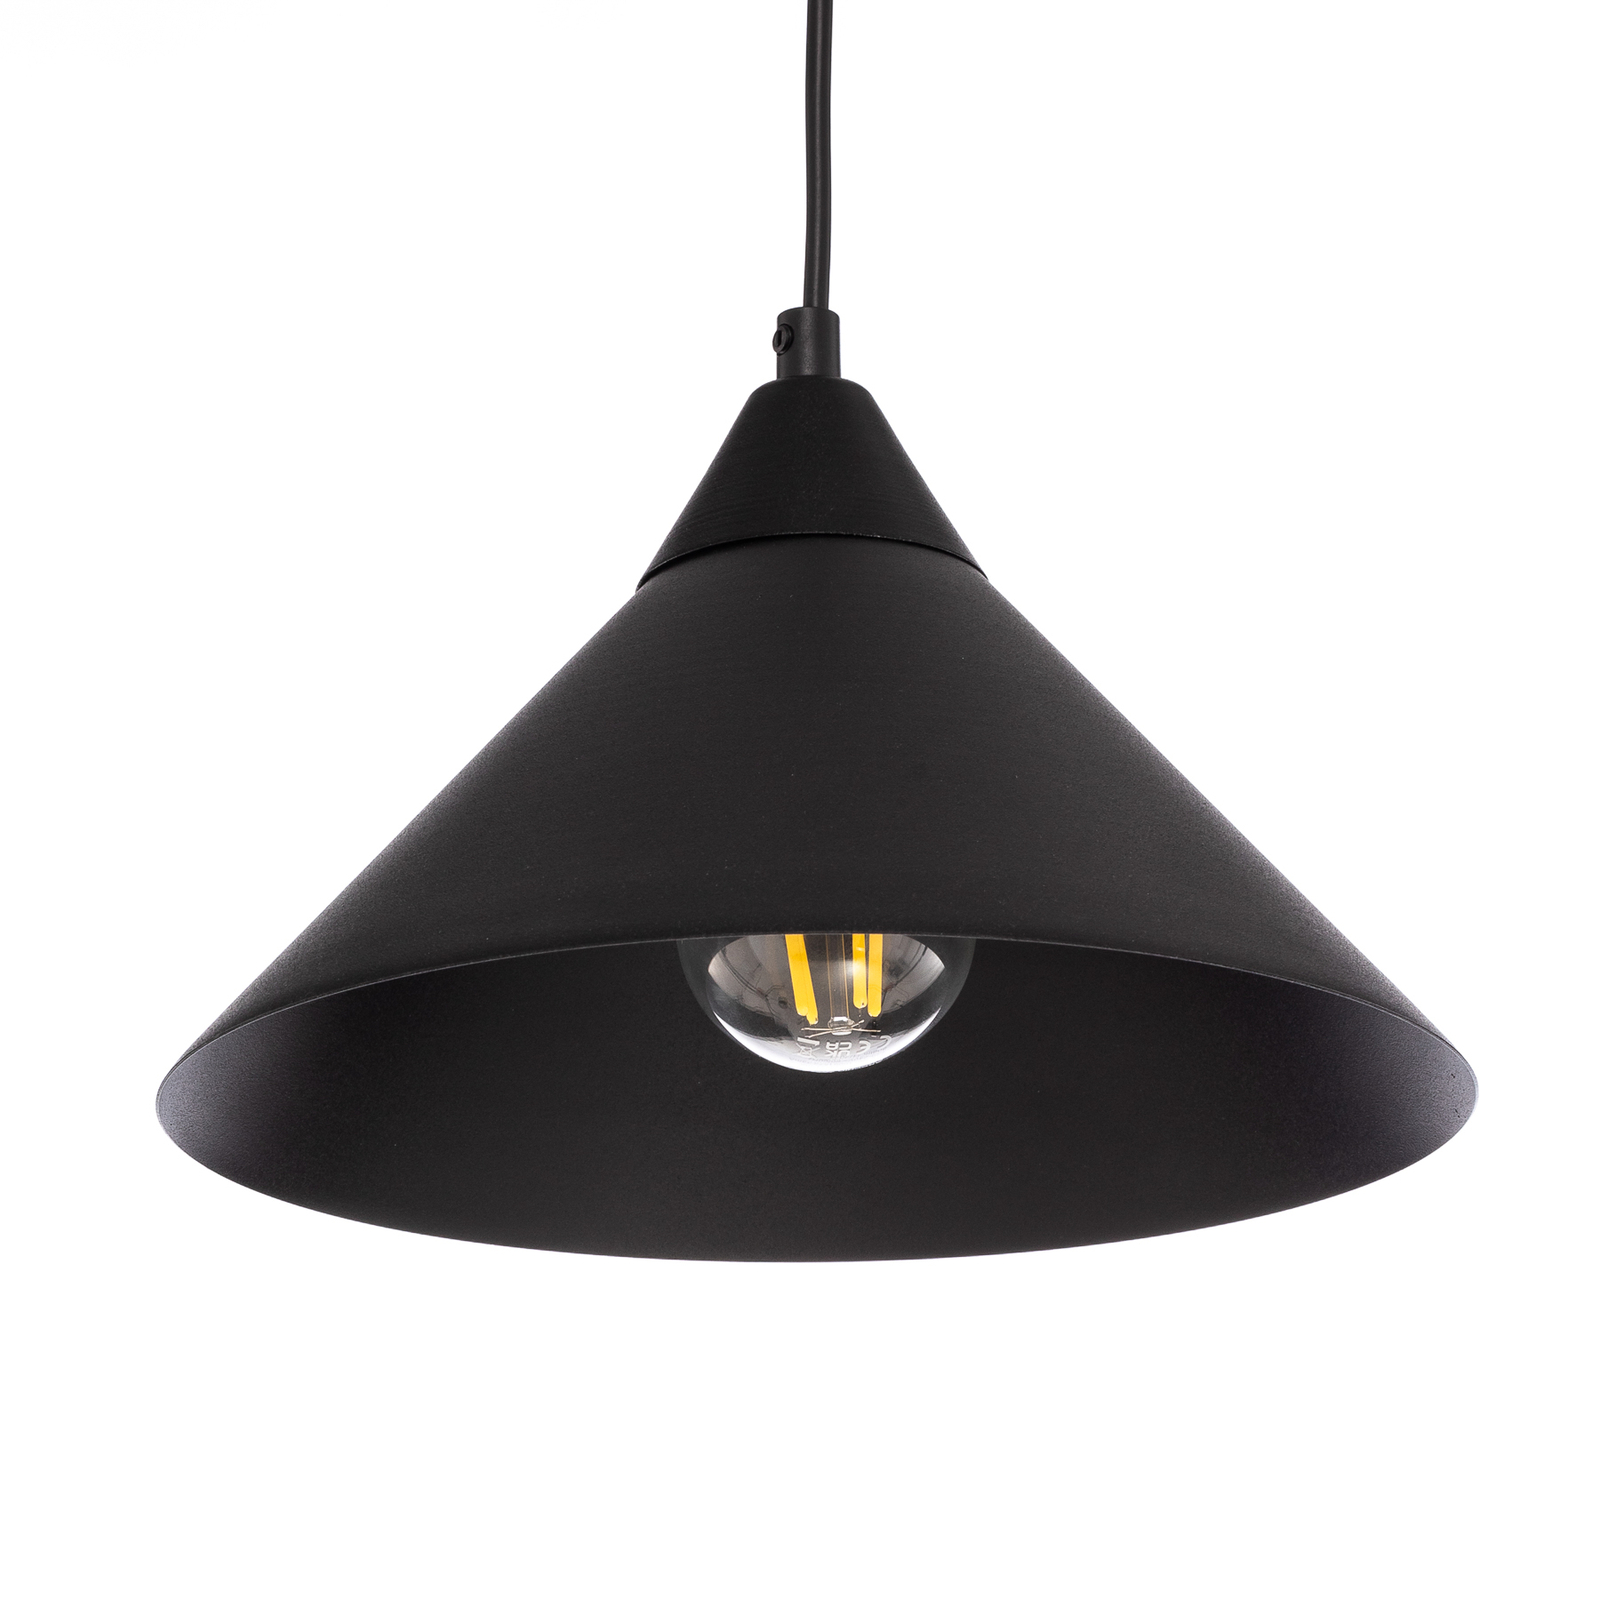 Ramo pendant light, one-bulb, black